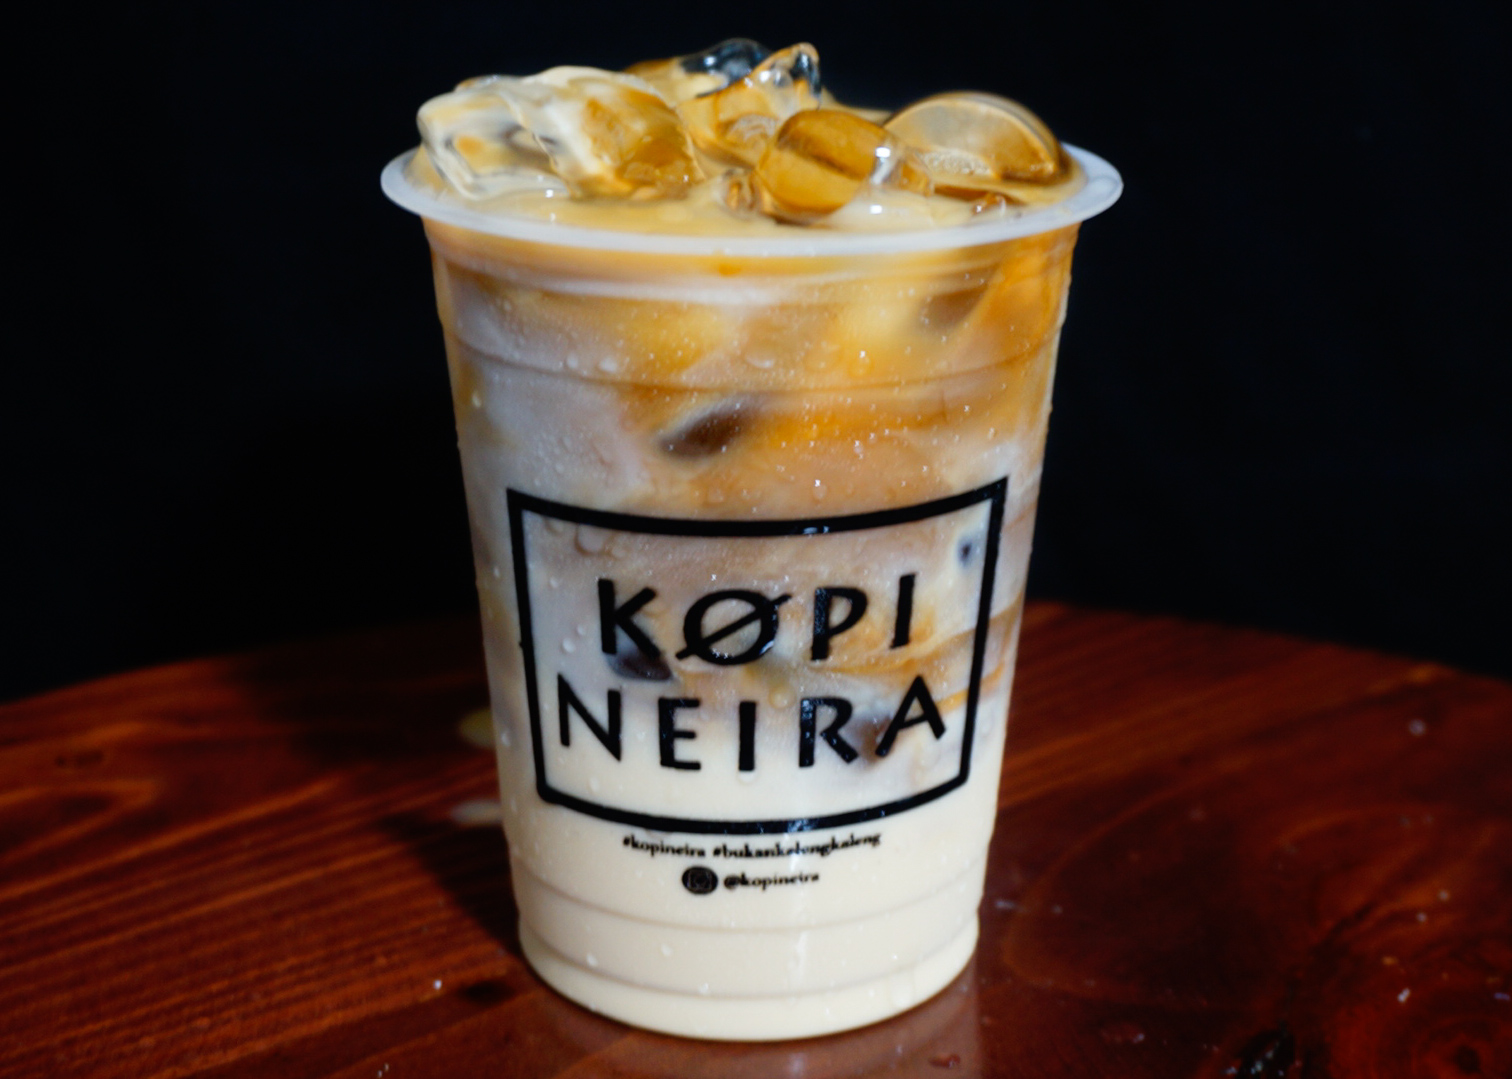 Kopi-Neira-Original-3.jpg